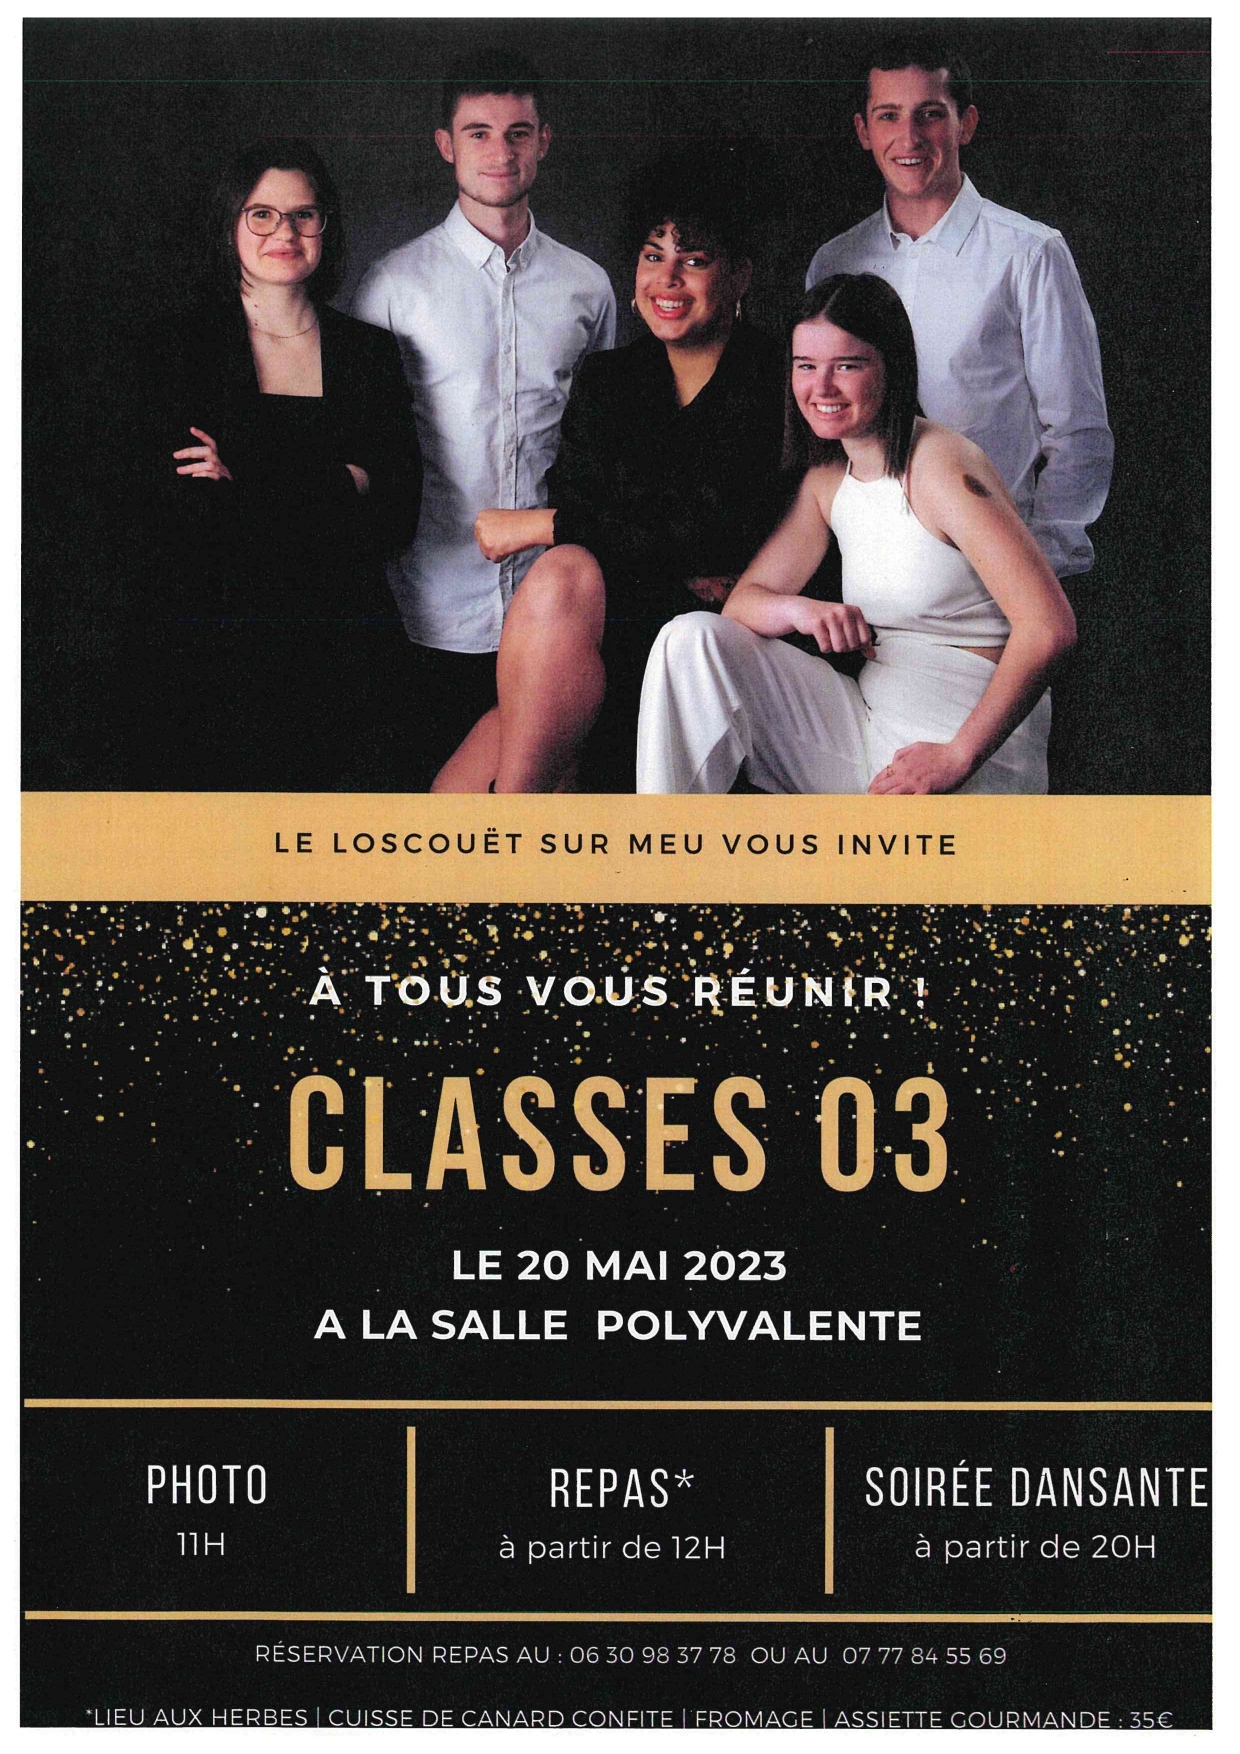 le Loscouet-Sur-Meu vous invite à tous vous réunir , le 20 mai prochain à la salle polyvalente.<br />
Photos, repas et soirée dansante. Réservation possible.